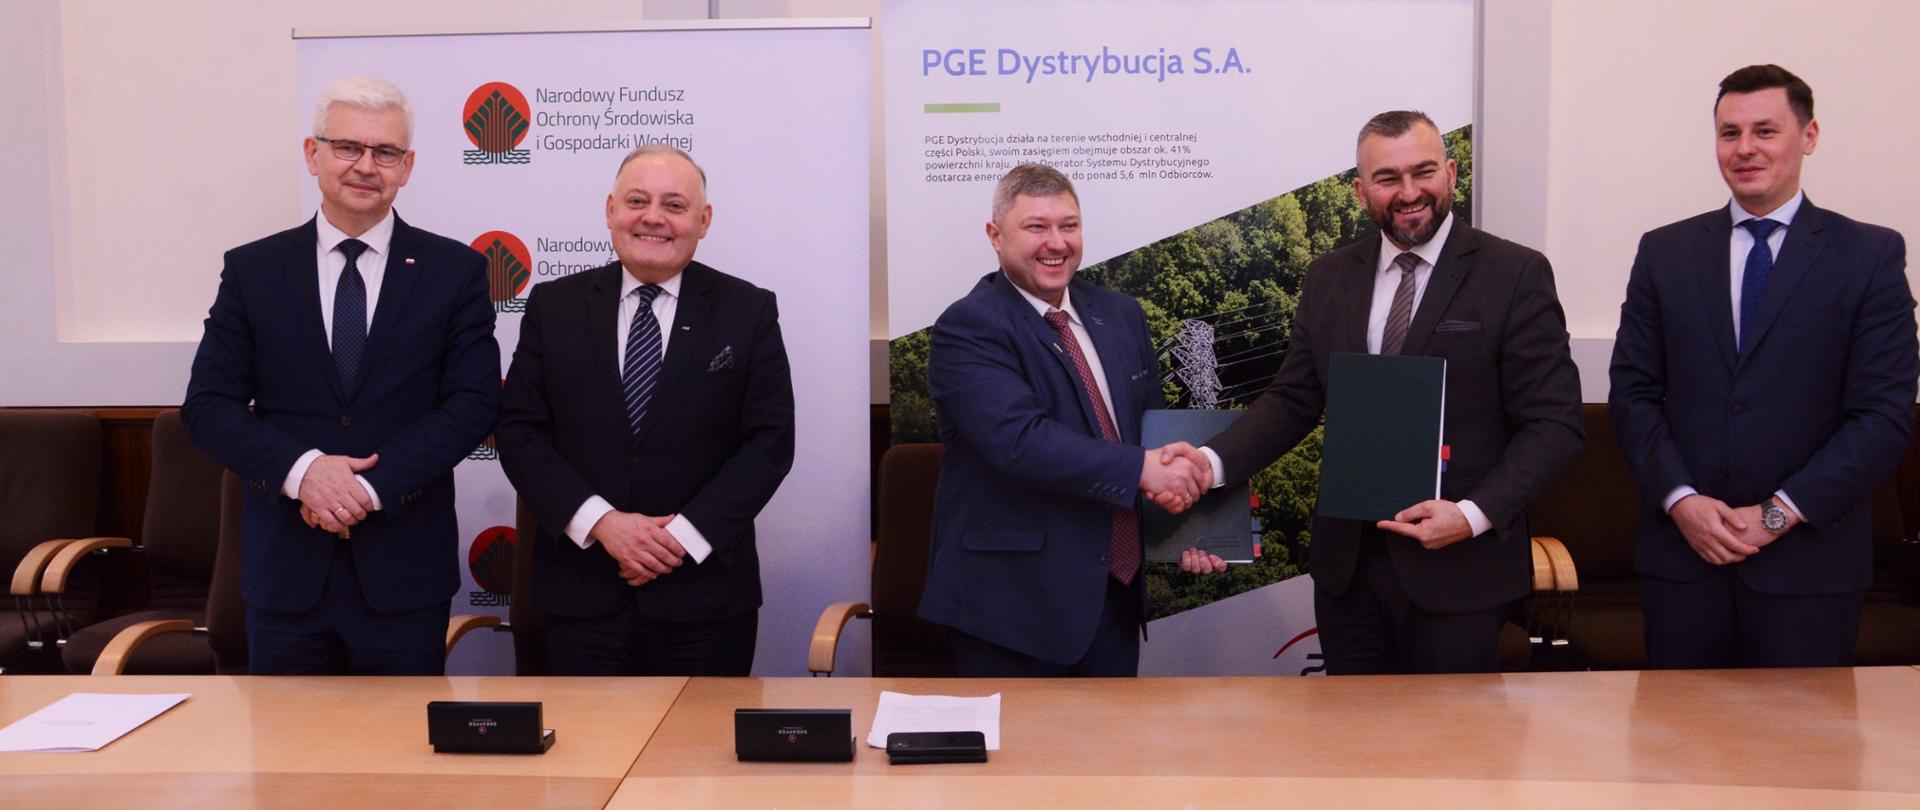 dr Przemysław Ligenza, Prezes Zarządu NFOŚiGW podczas uroczystego podpisania umowy z PGE Dystrybucja